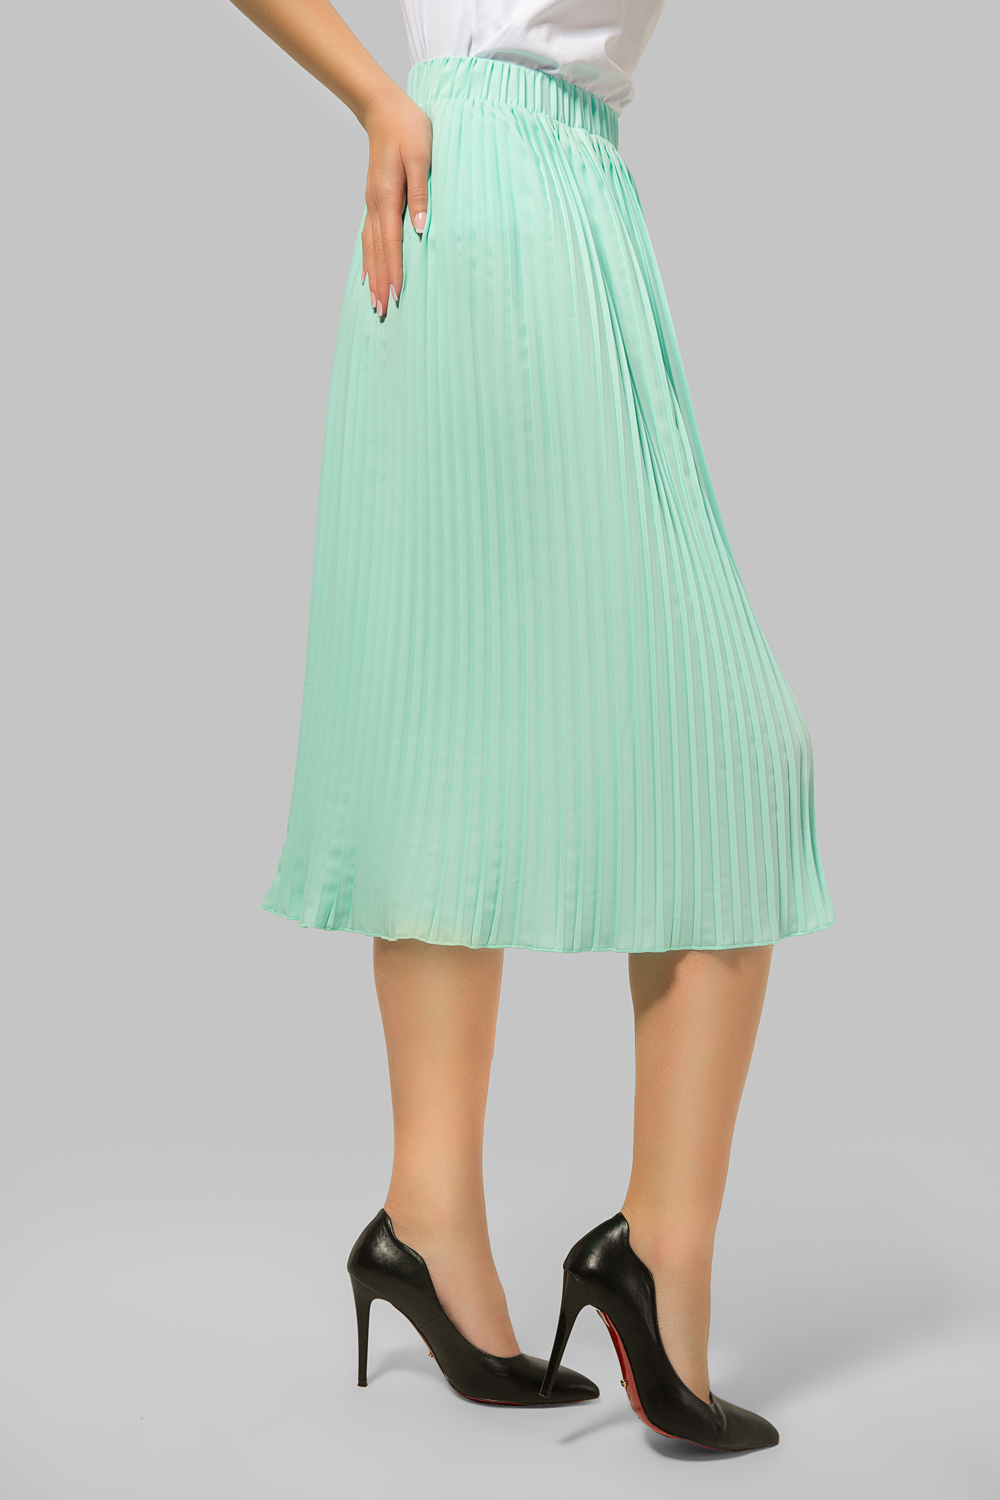 Mint pleated skirt